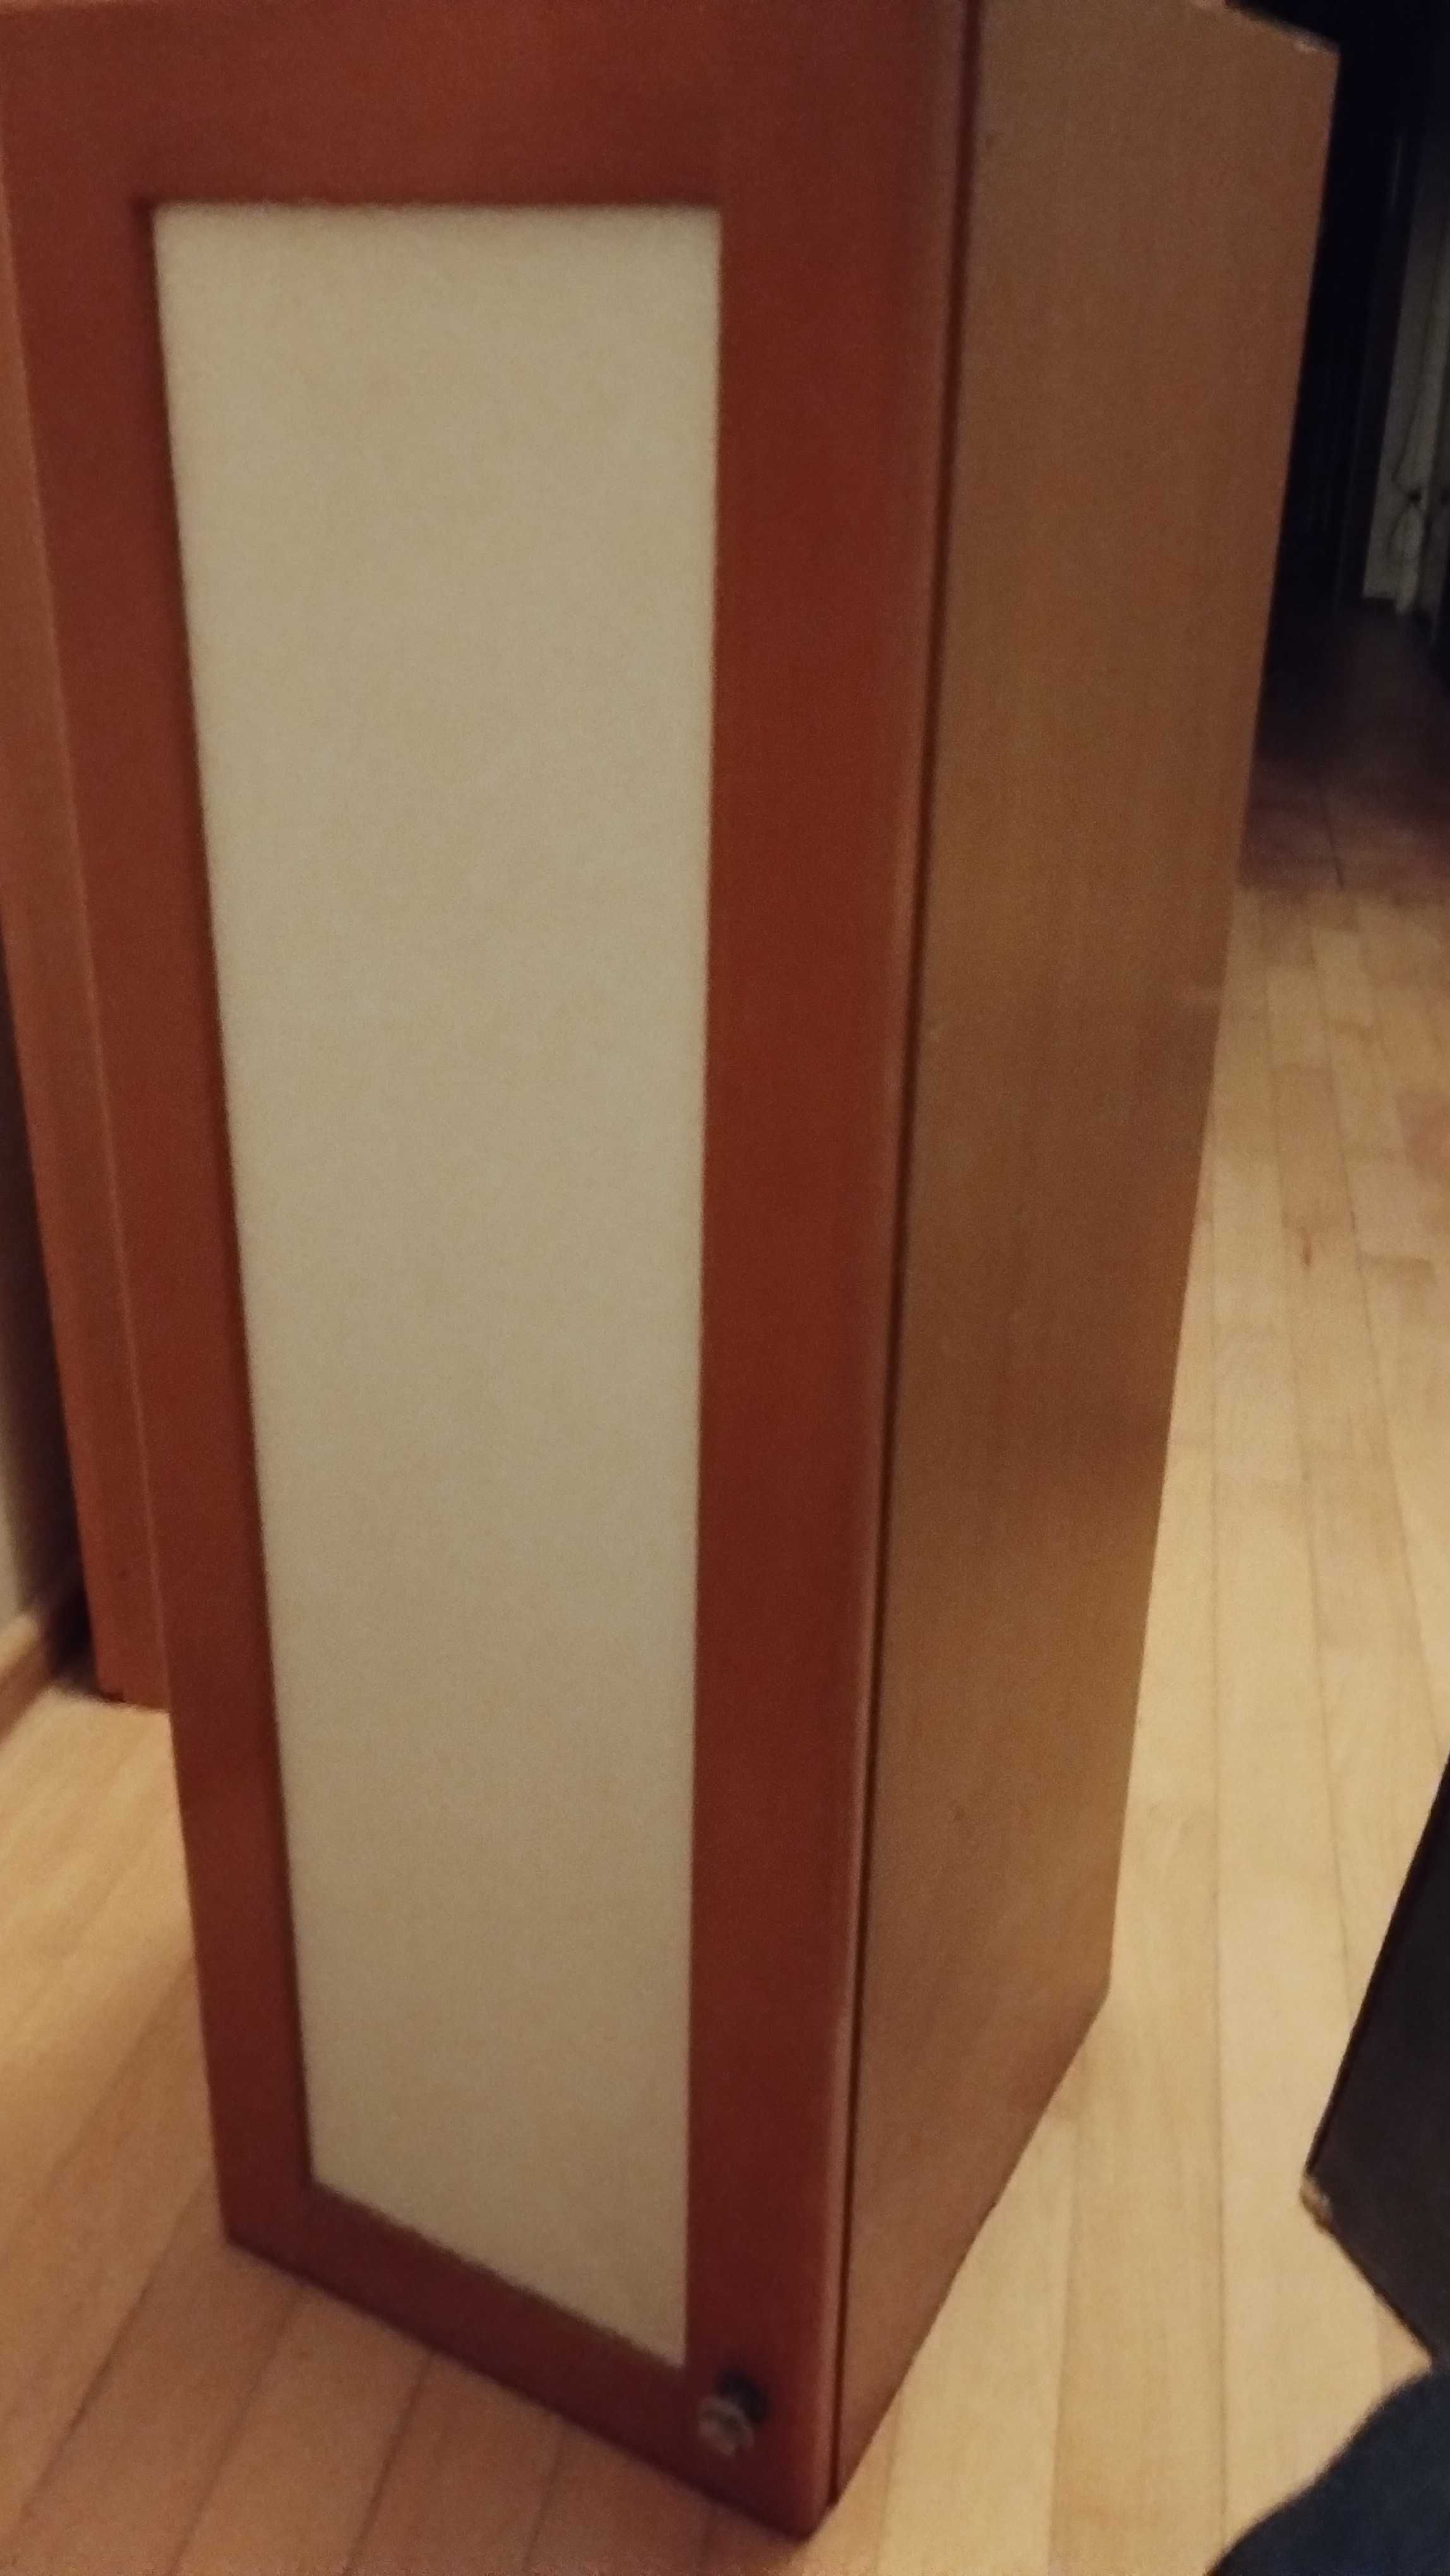 szafka kuchenna 30 cm wisząca górna słupek wysokość 87 cm